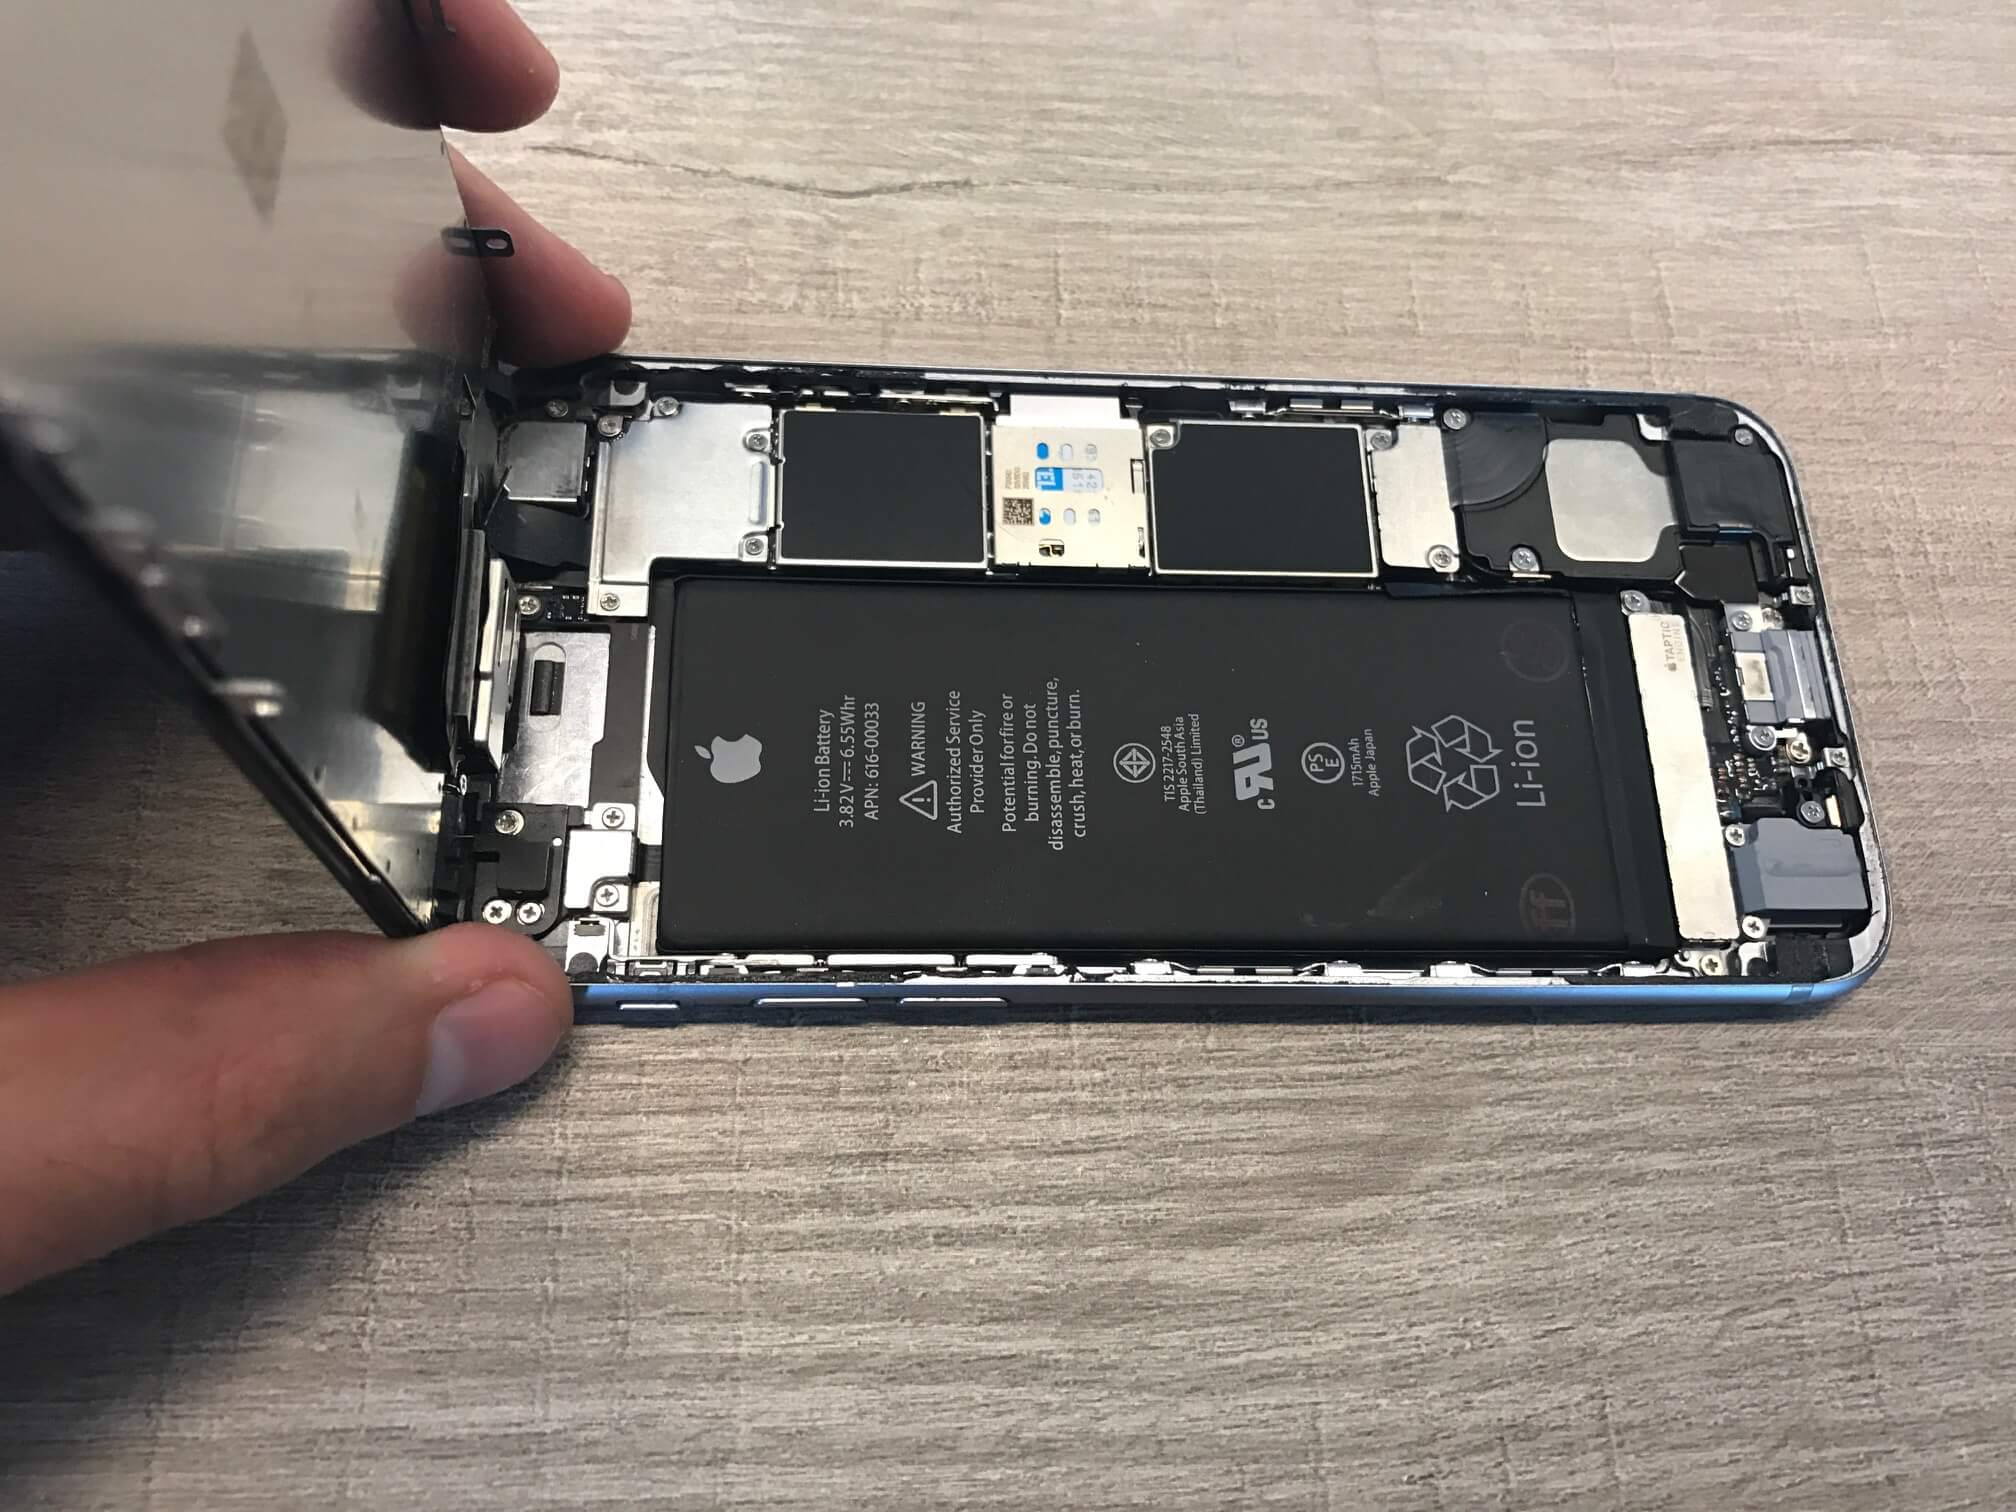 historisch Pluche pop bodem iPhone 6s toestellen hebben problemen met de batterij